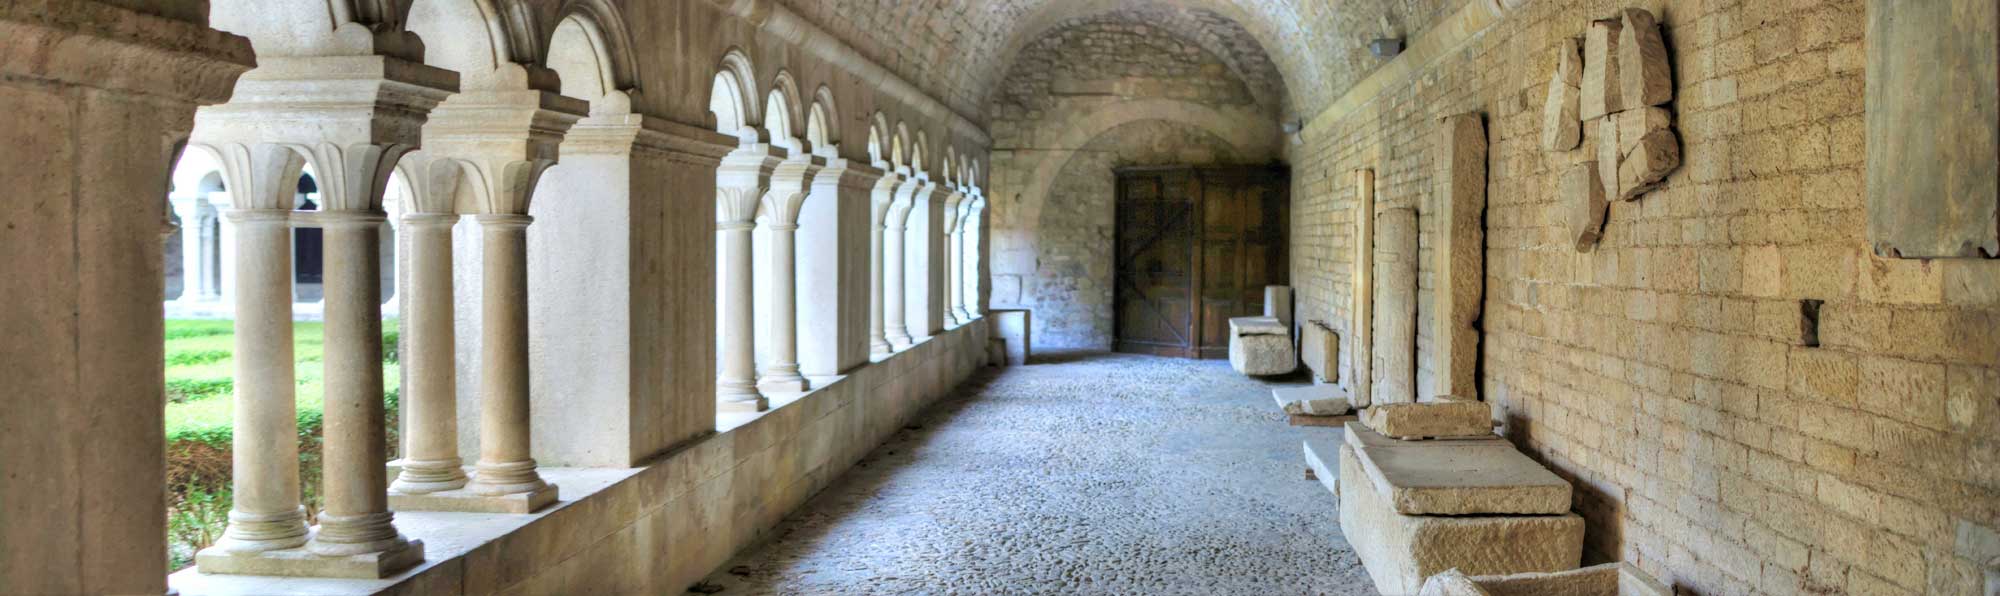 Cloitre de la cathédrale de vaison la romaine